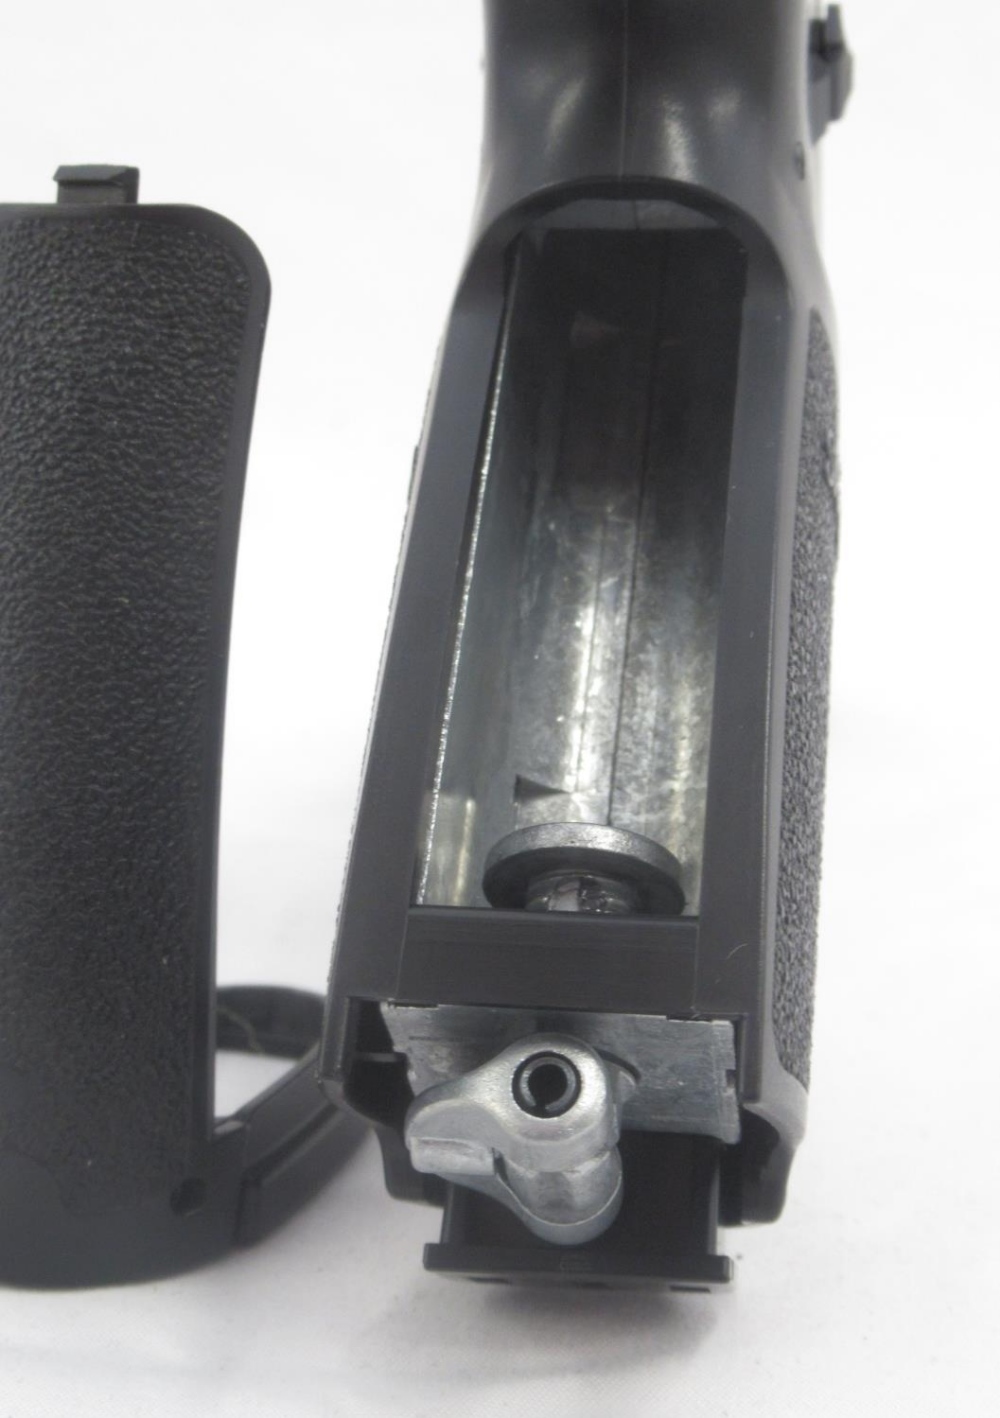 Sig Sauer P320 .177 CO2 air pistol with 30 rnd belt fed magazine, in original box - Bild 7 aus 8